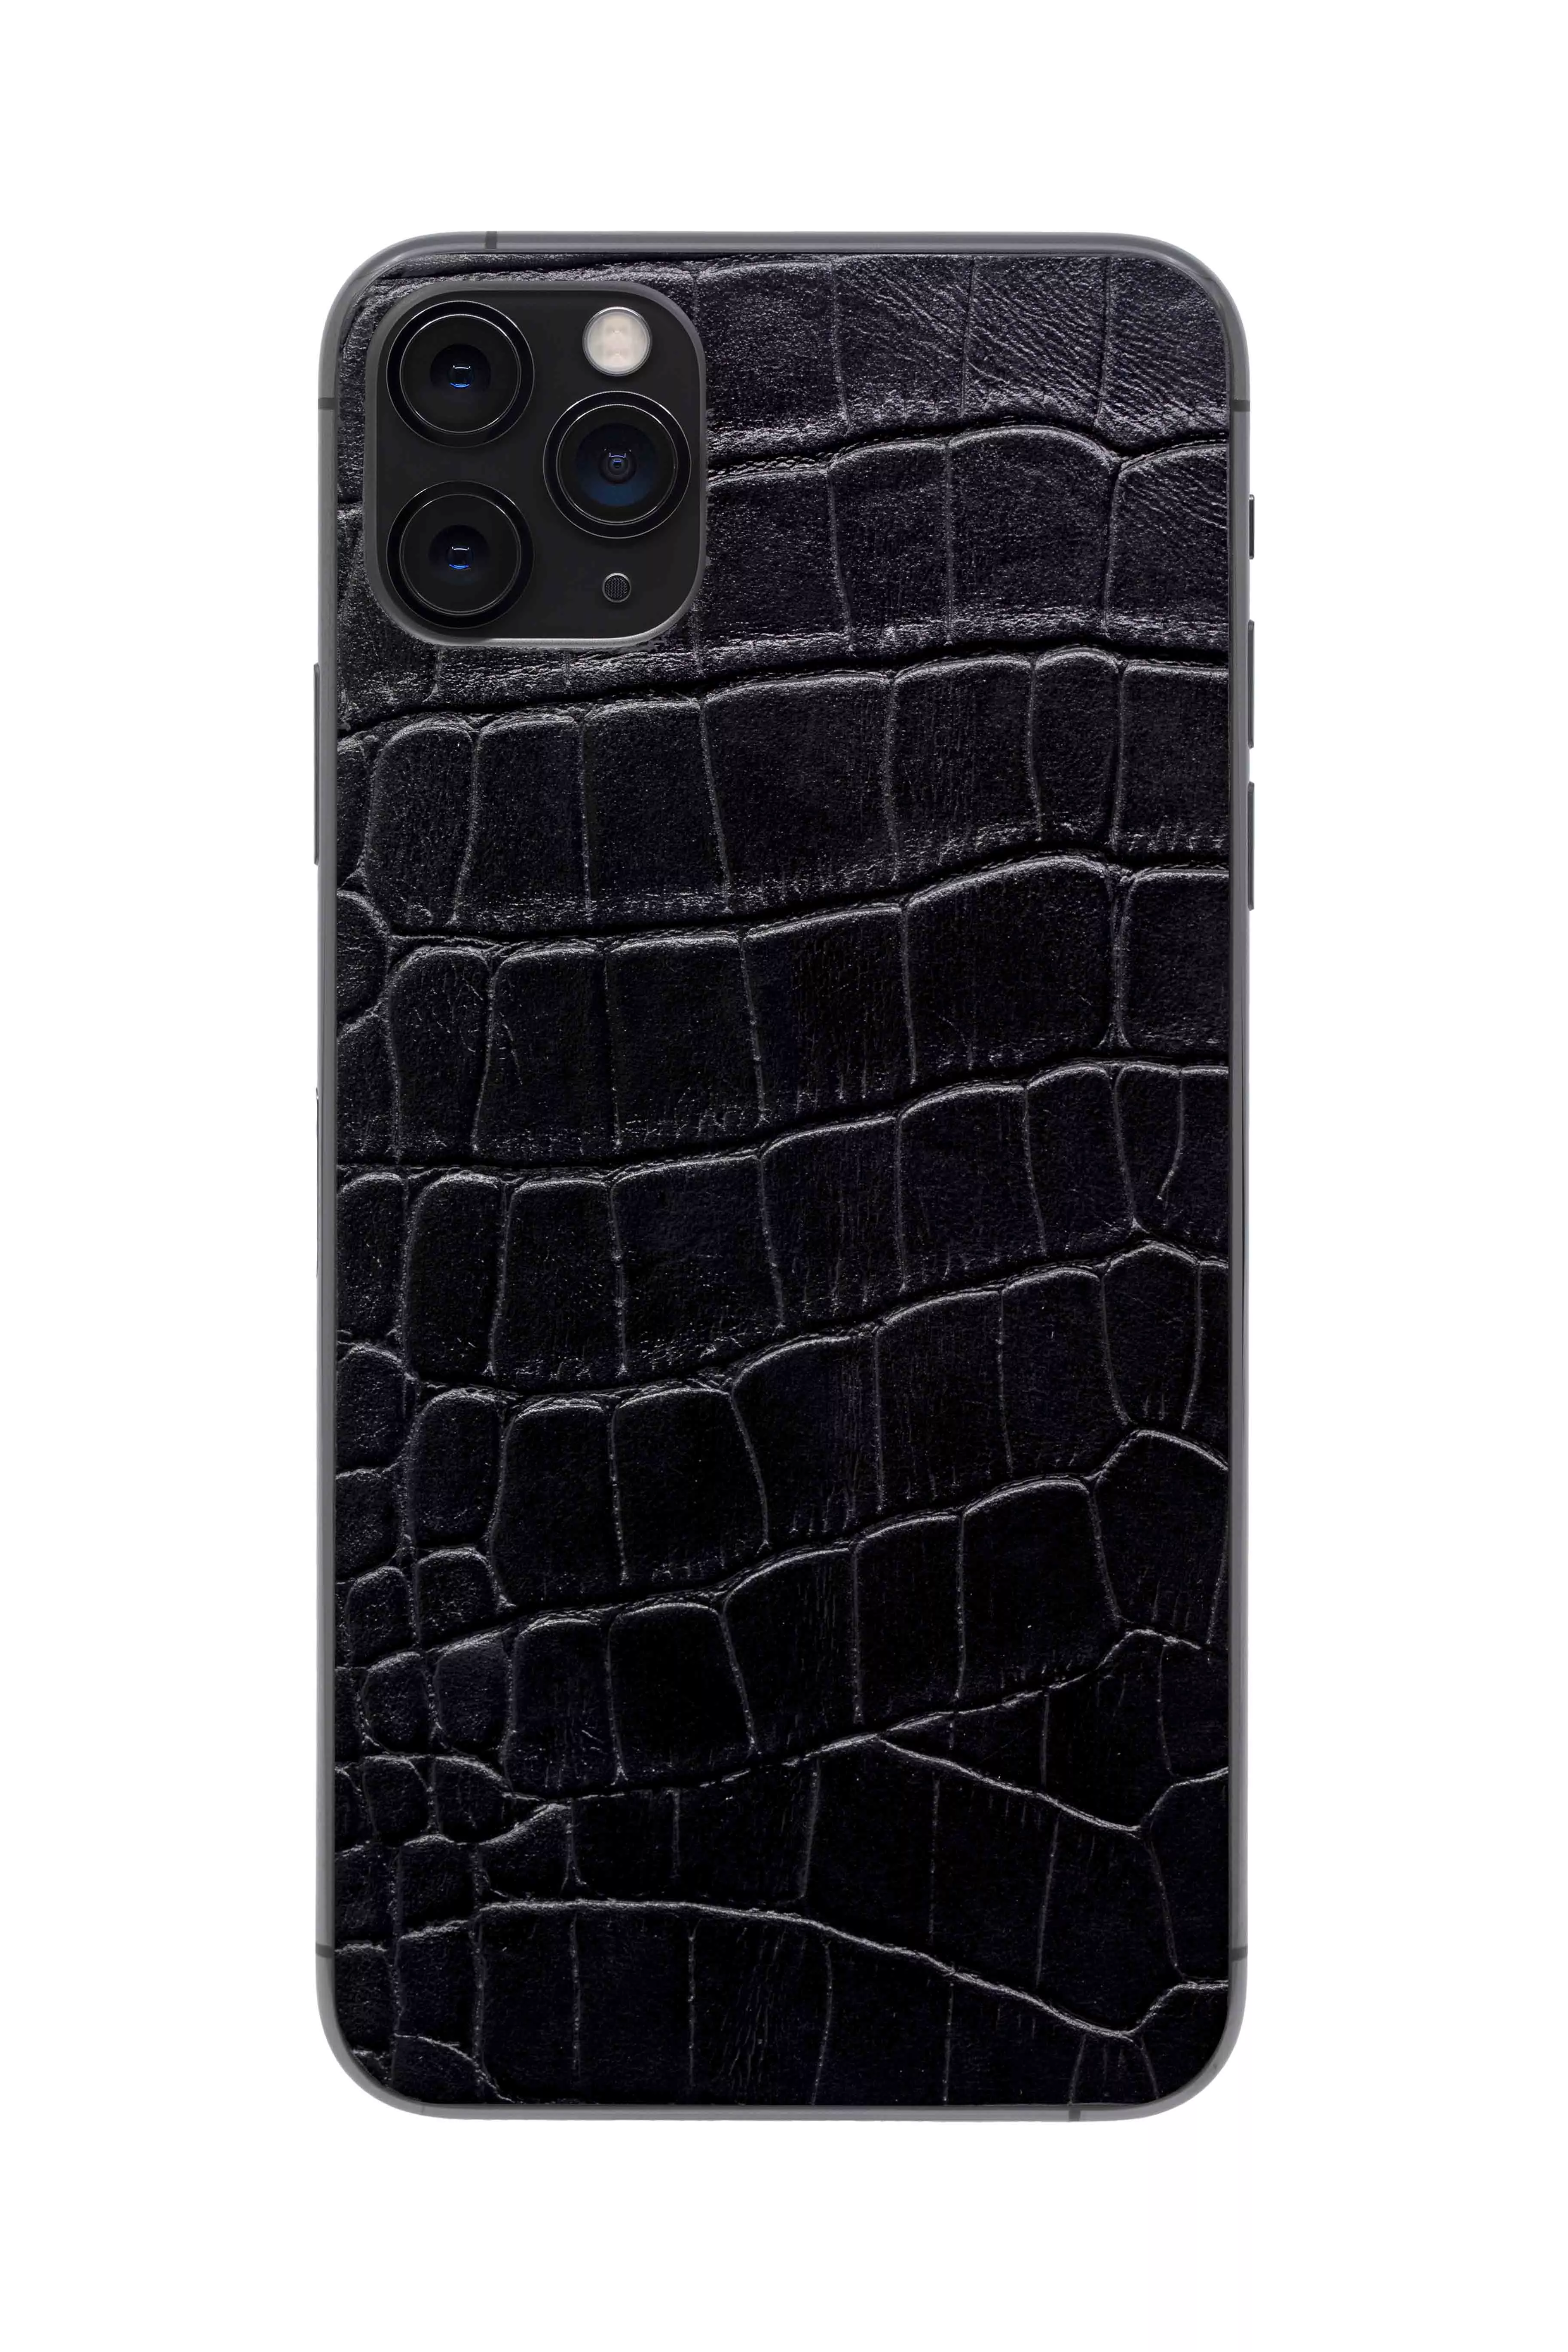 Купить Защитная наклейка из натуральной кожи для iPhone 11 Pro Max, Вид Черный 3 в Сочи. Вид 1